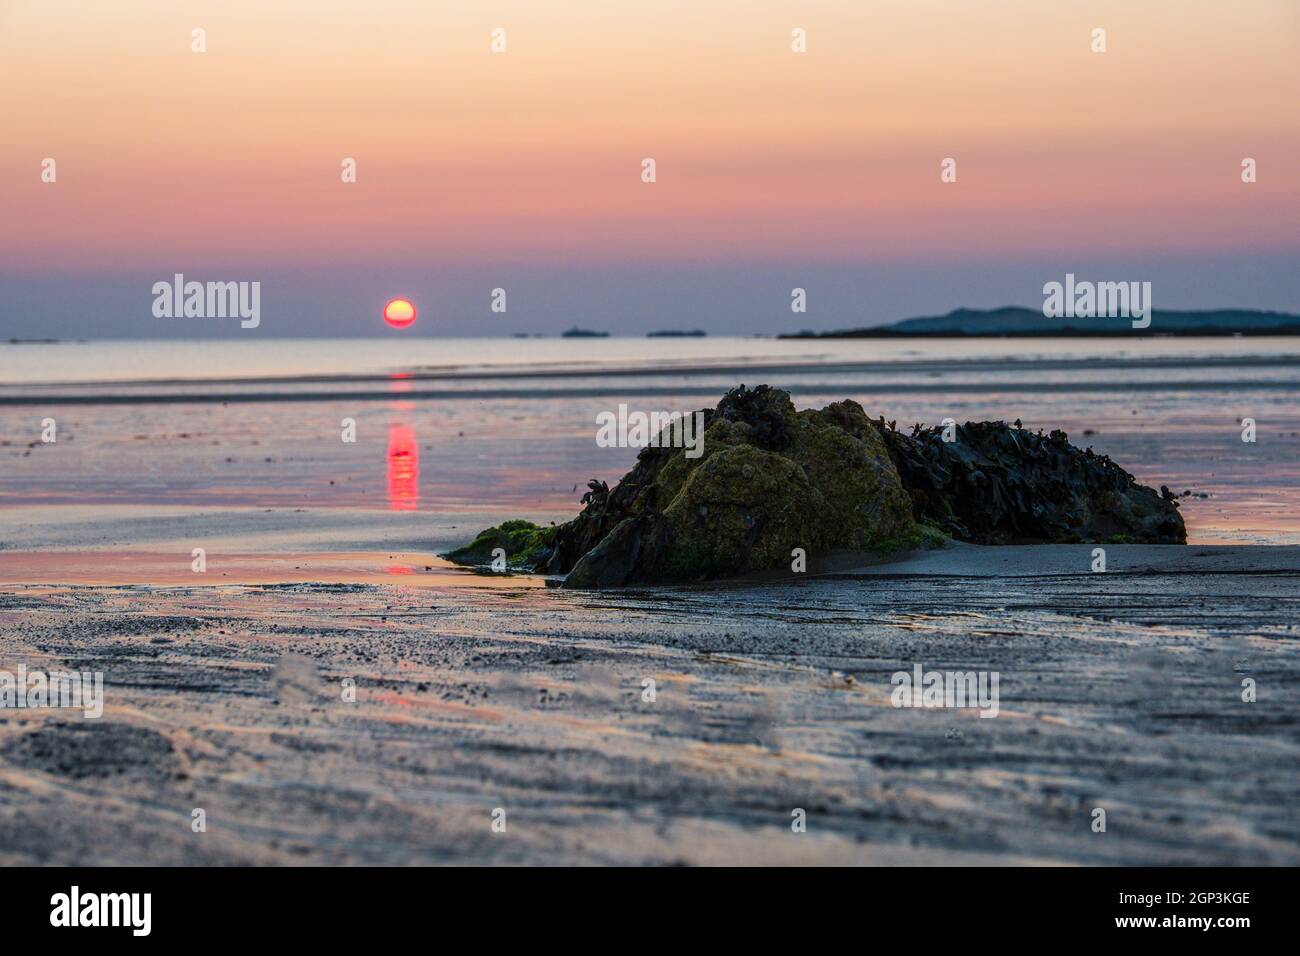 Sonnenuntergang am Strand, Anglesey Westküste in der Nähe von Rhoseigr, Wales, Großbritannien Stockfoto